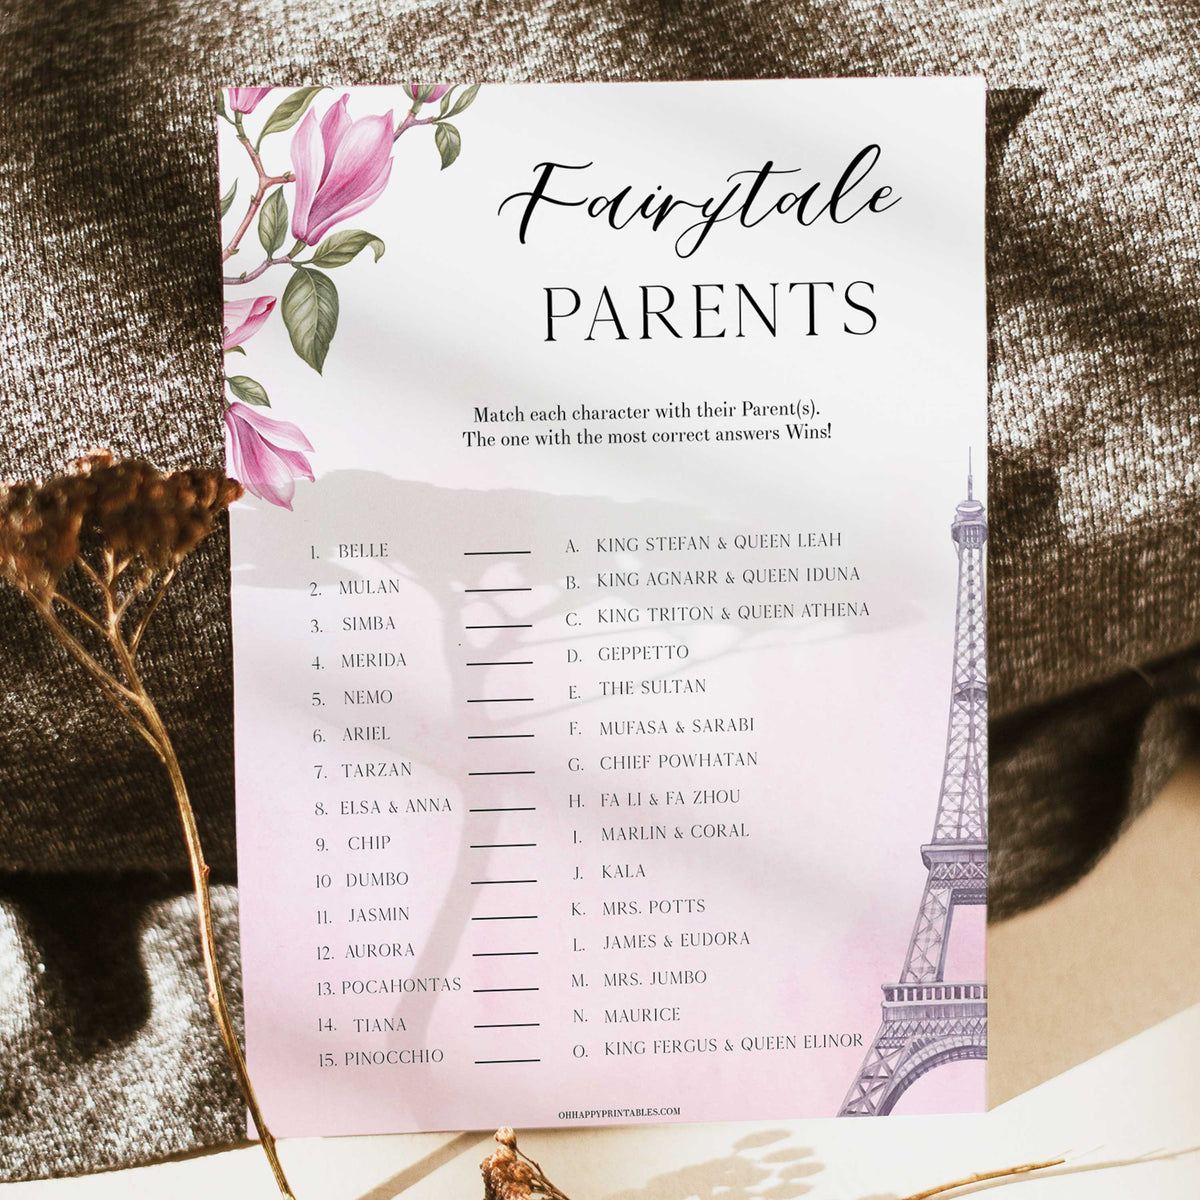 Fairytale Parents - Parisian